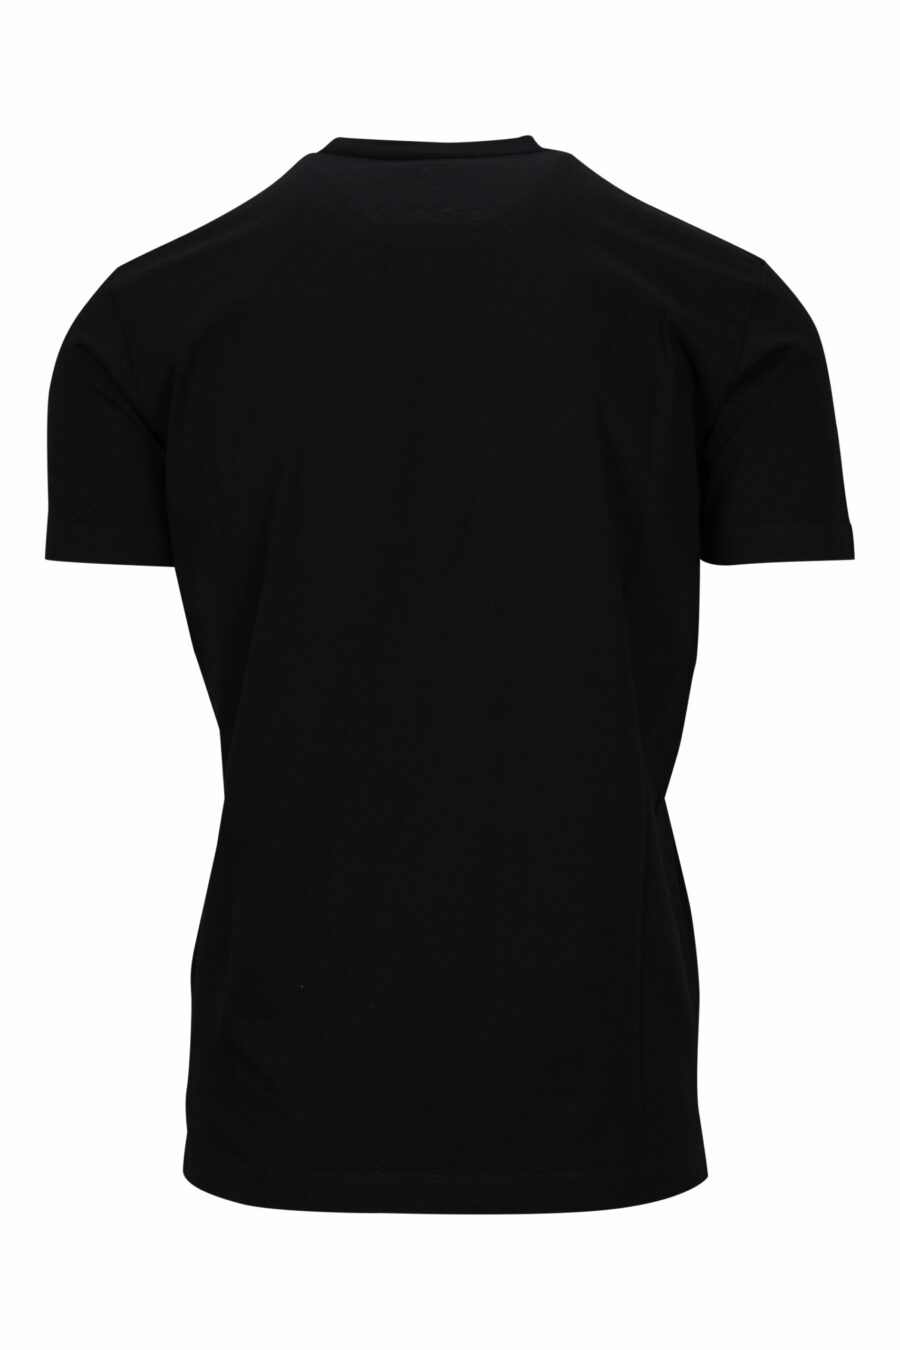 T-shirt preta com maxilogo de cão de basquetebol - 8054148332662 1 à escala